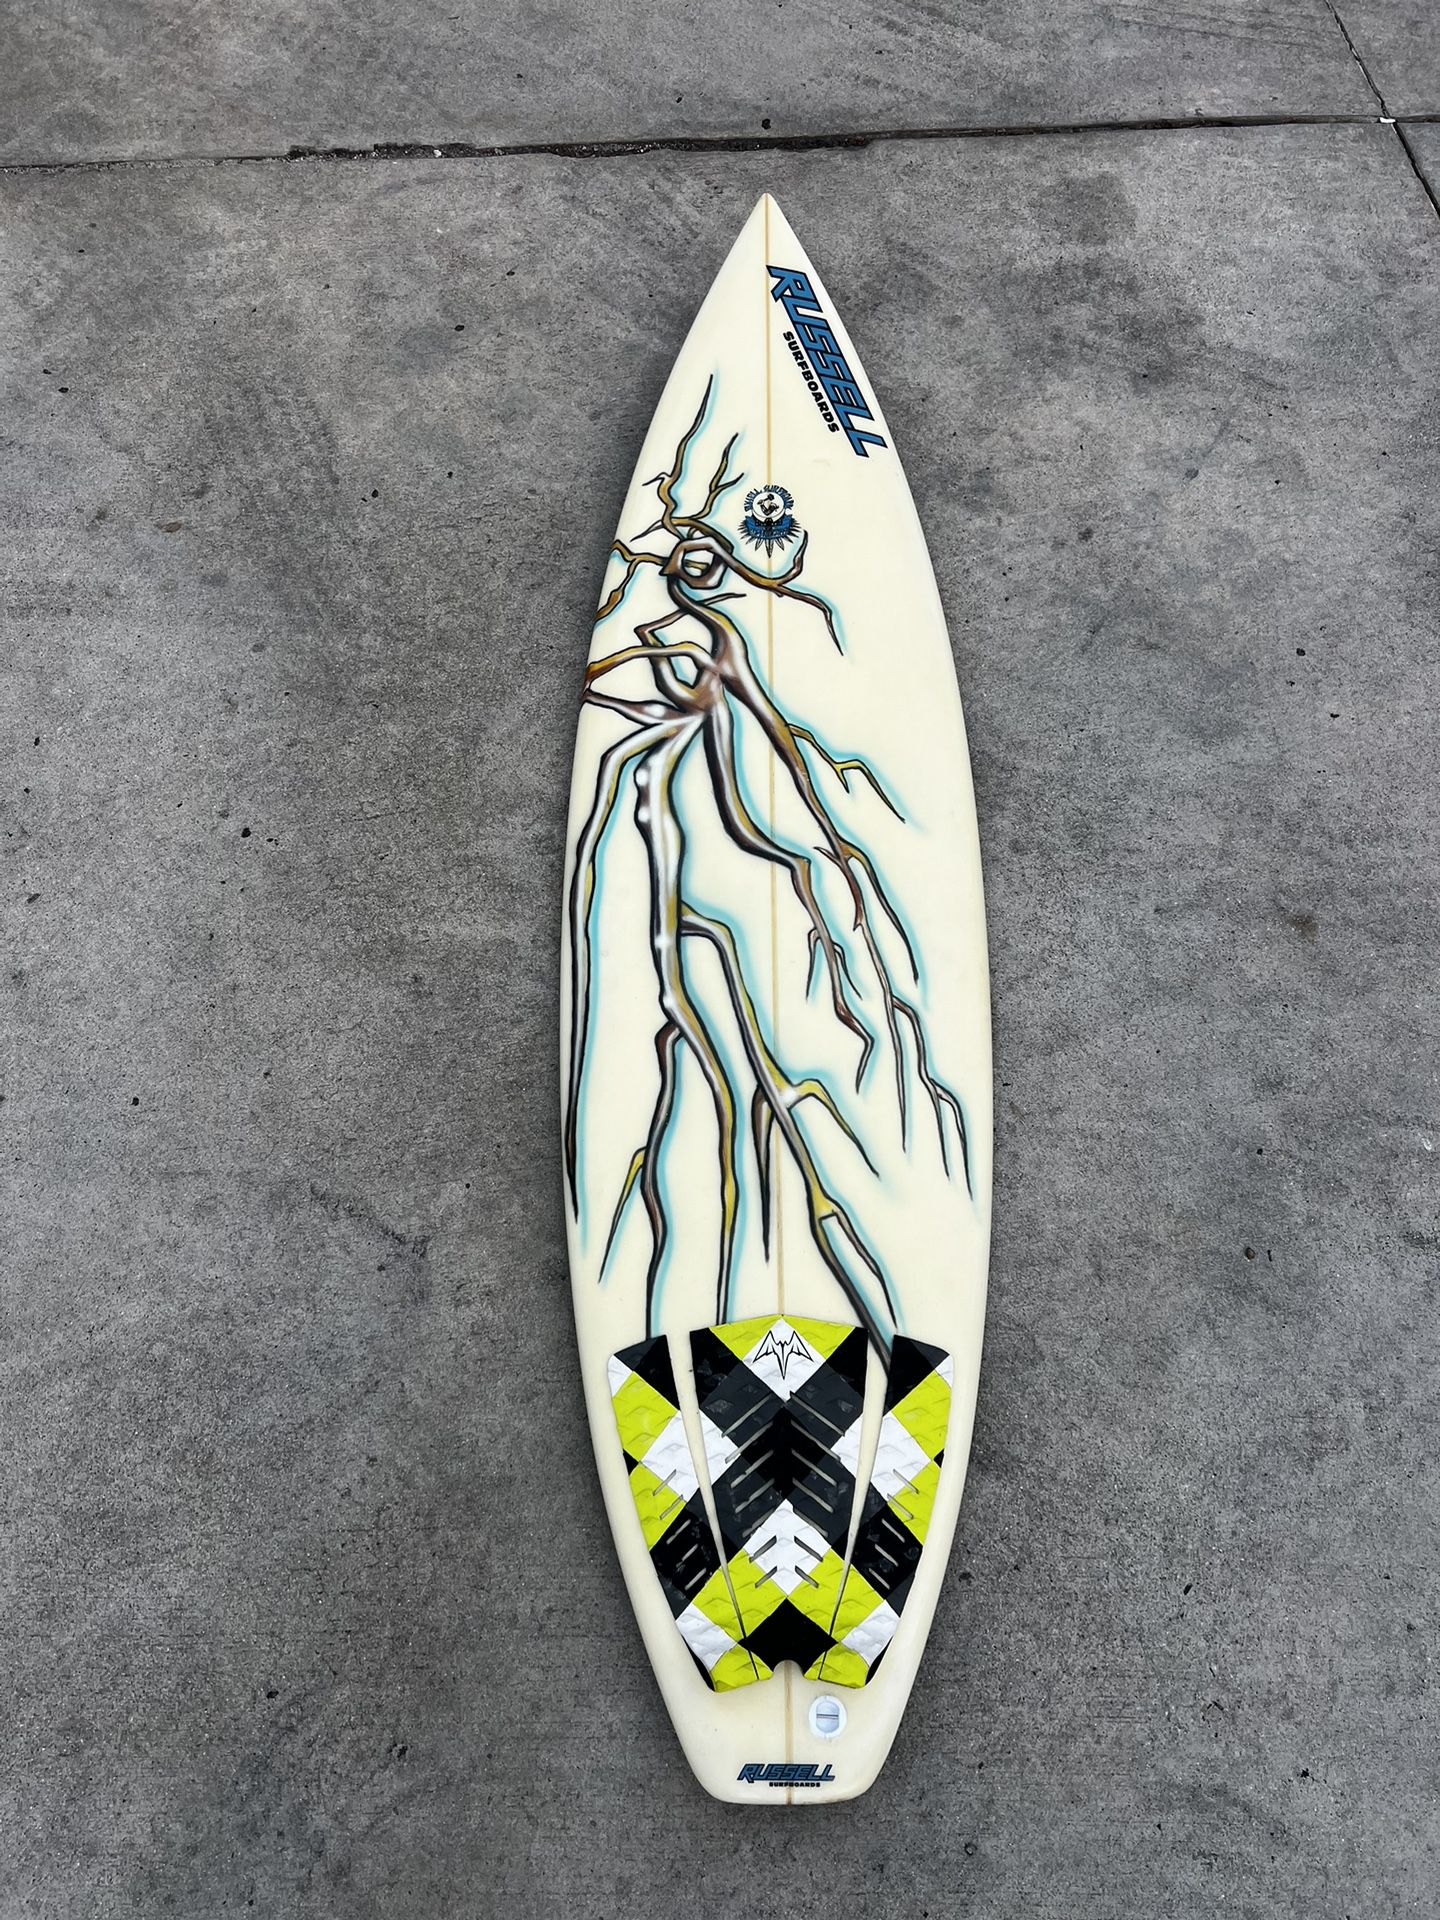 6’1 Lightning Russell Surfboard